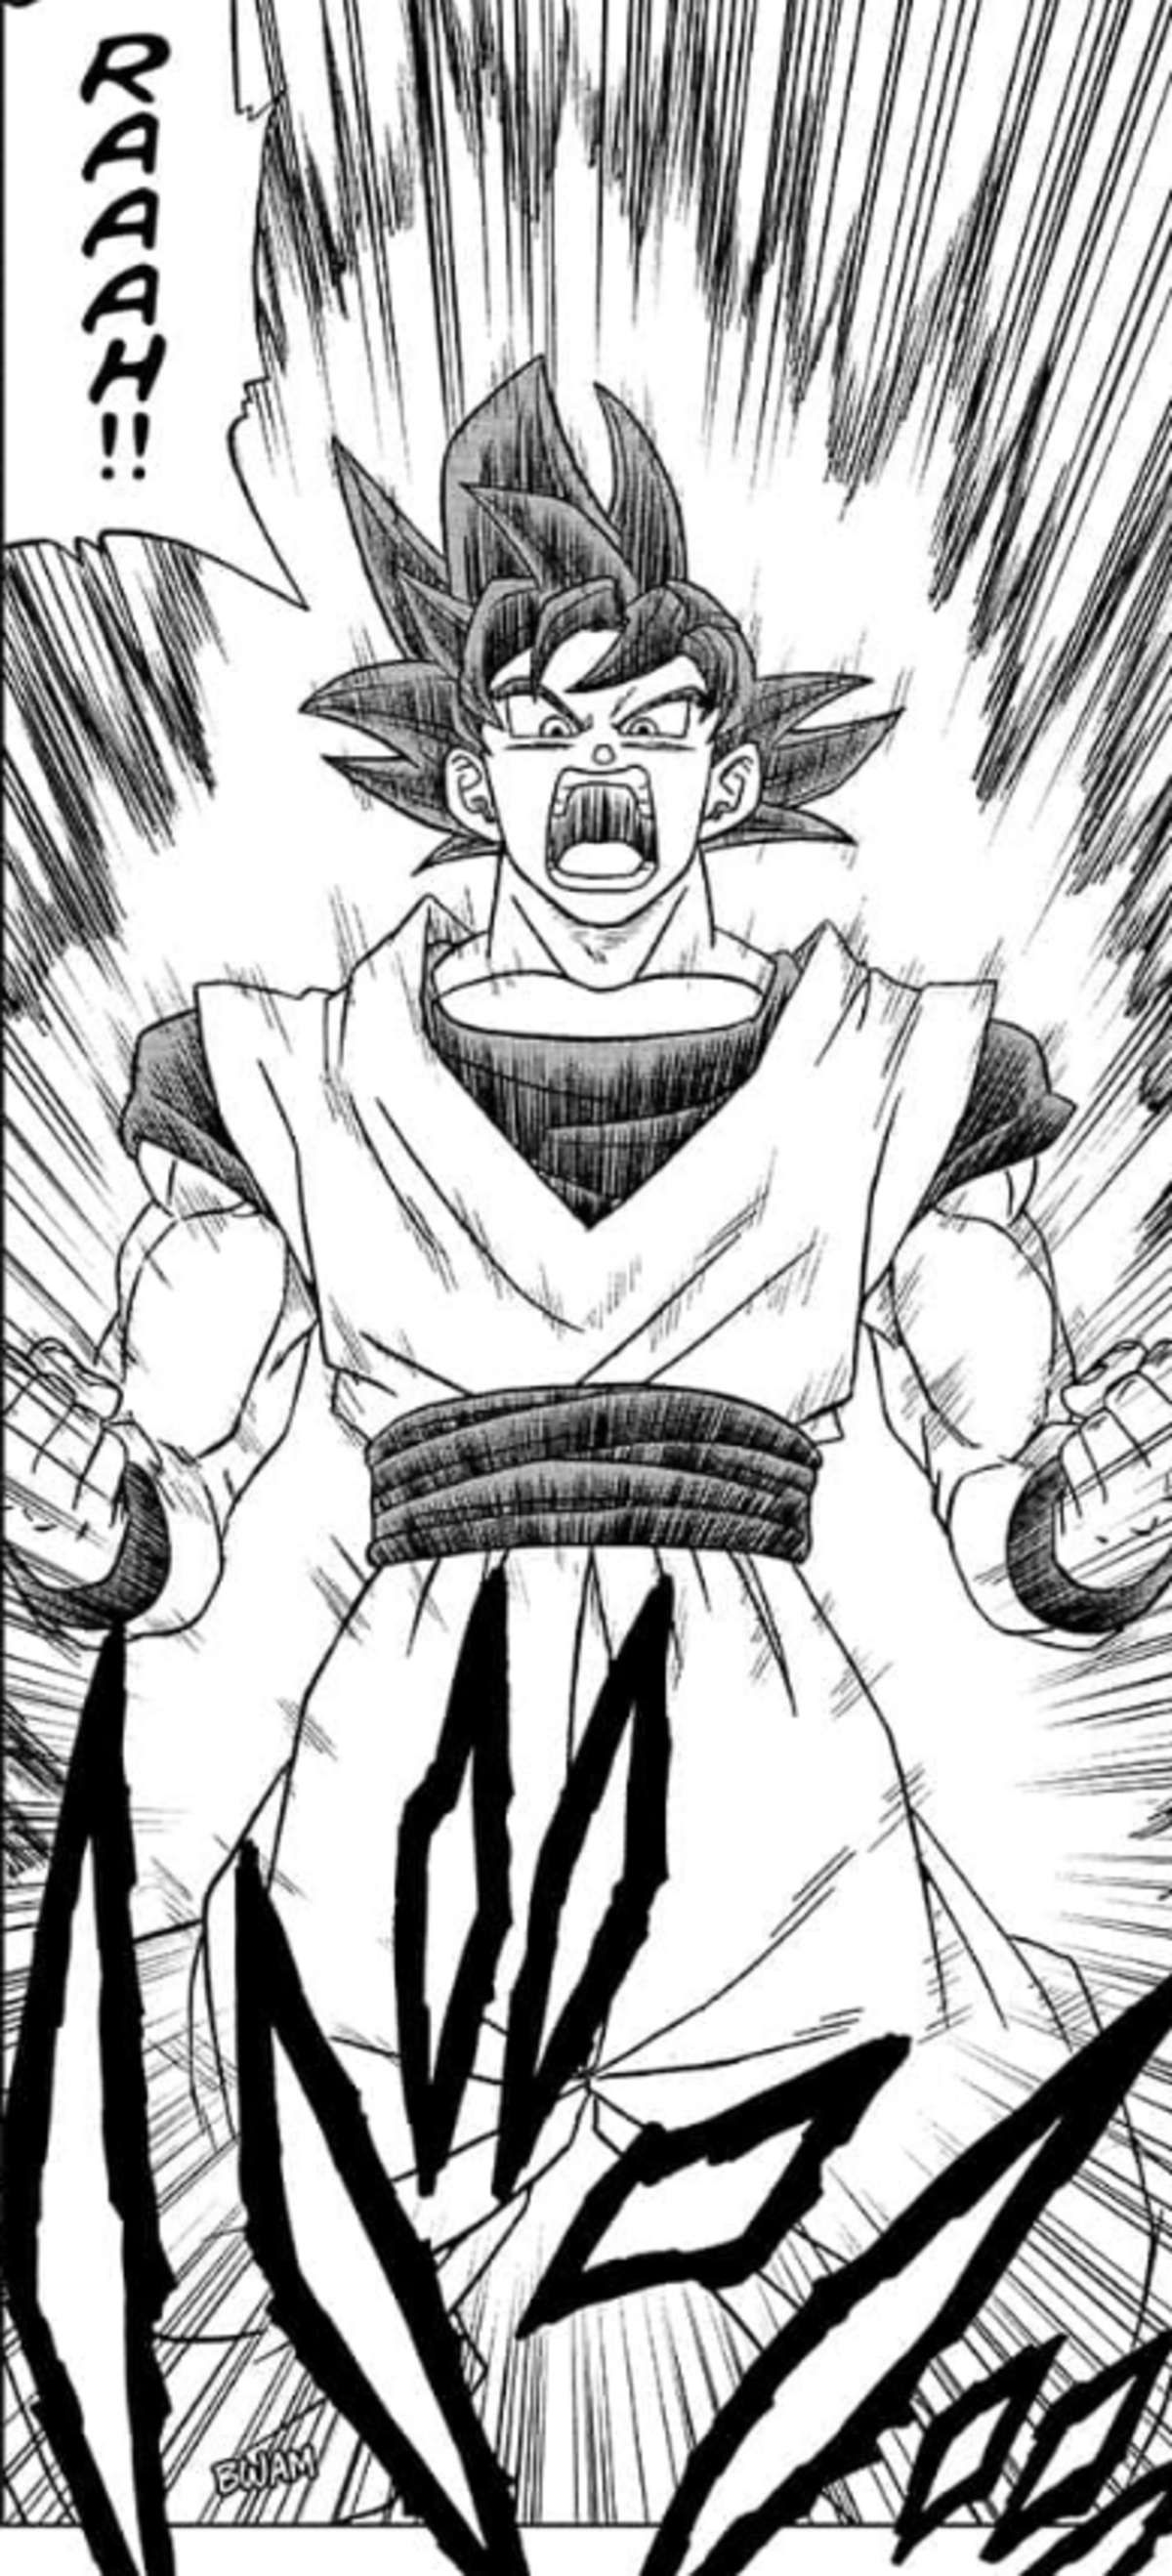 La nueva forma de Goku ya tiene nombre oficial en Dragon Ball Super